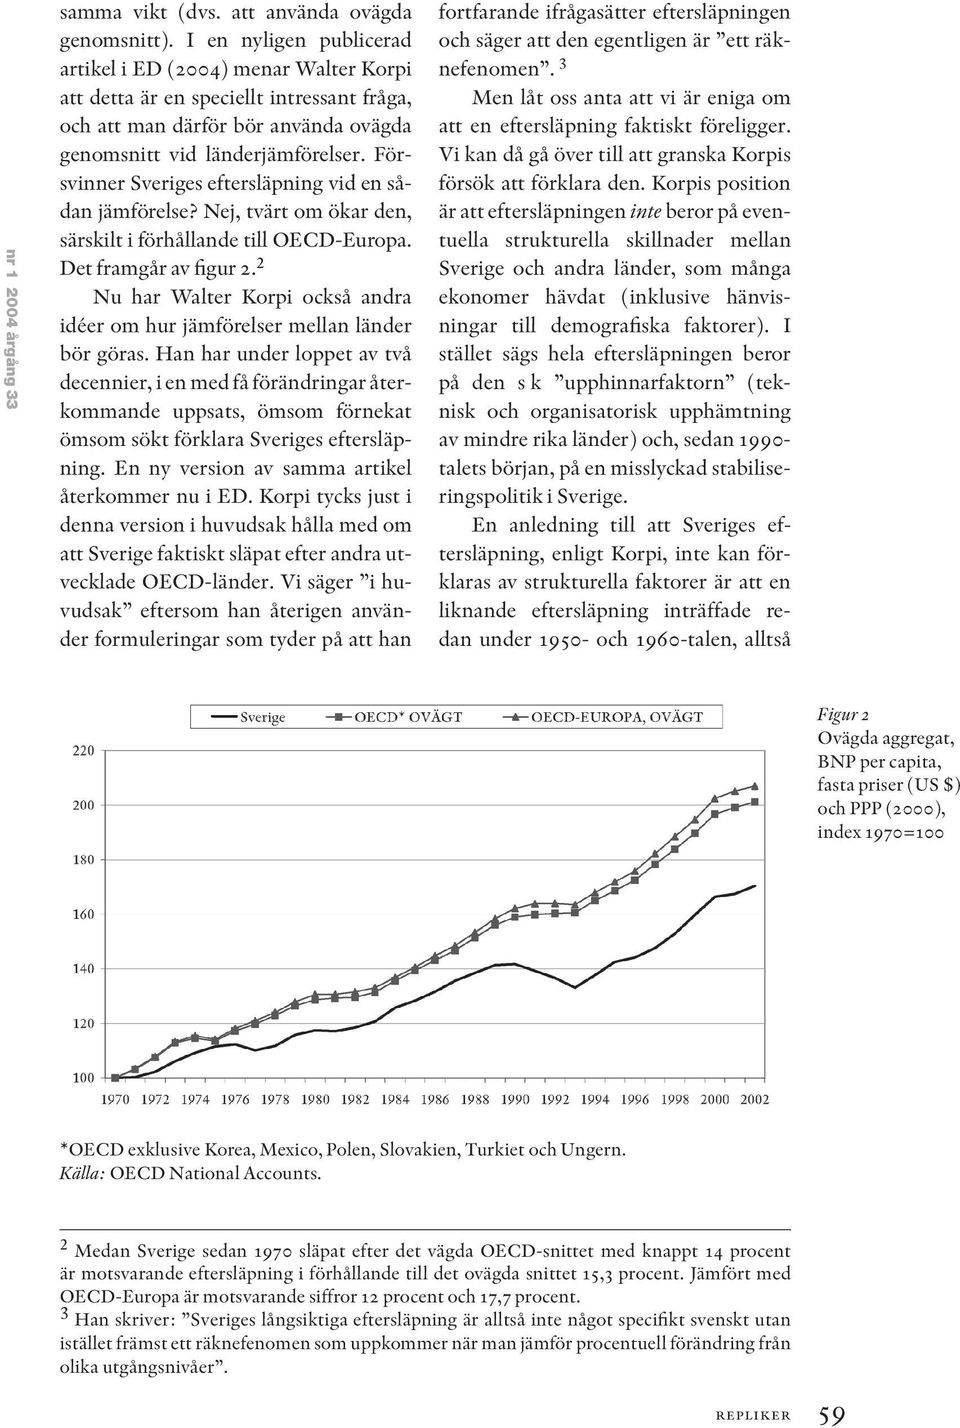 Försvinner Sveriges eftersläpning vid en sådan jämförelse? Nej, tvärt om ökar den, särskilt i förhållande till OECD-Europa. Det framgår av figur 2.